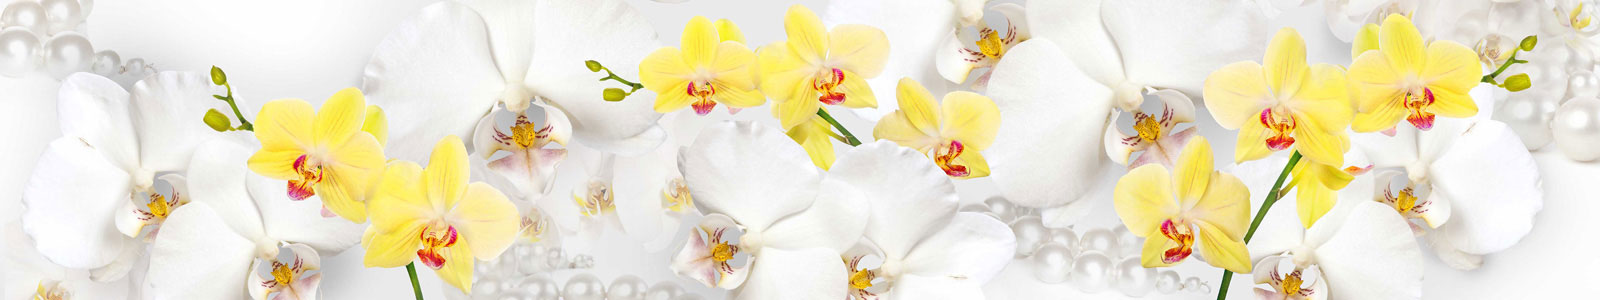 №5636 - Желтые, белые орхидеи с жемчугом